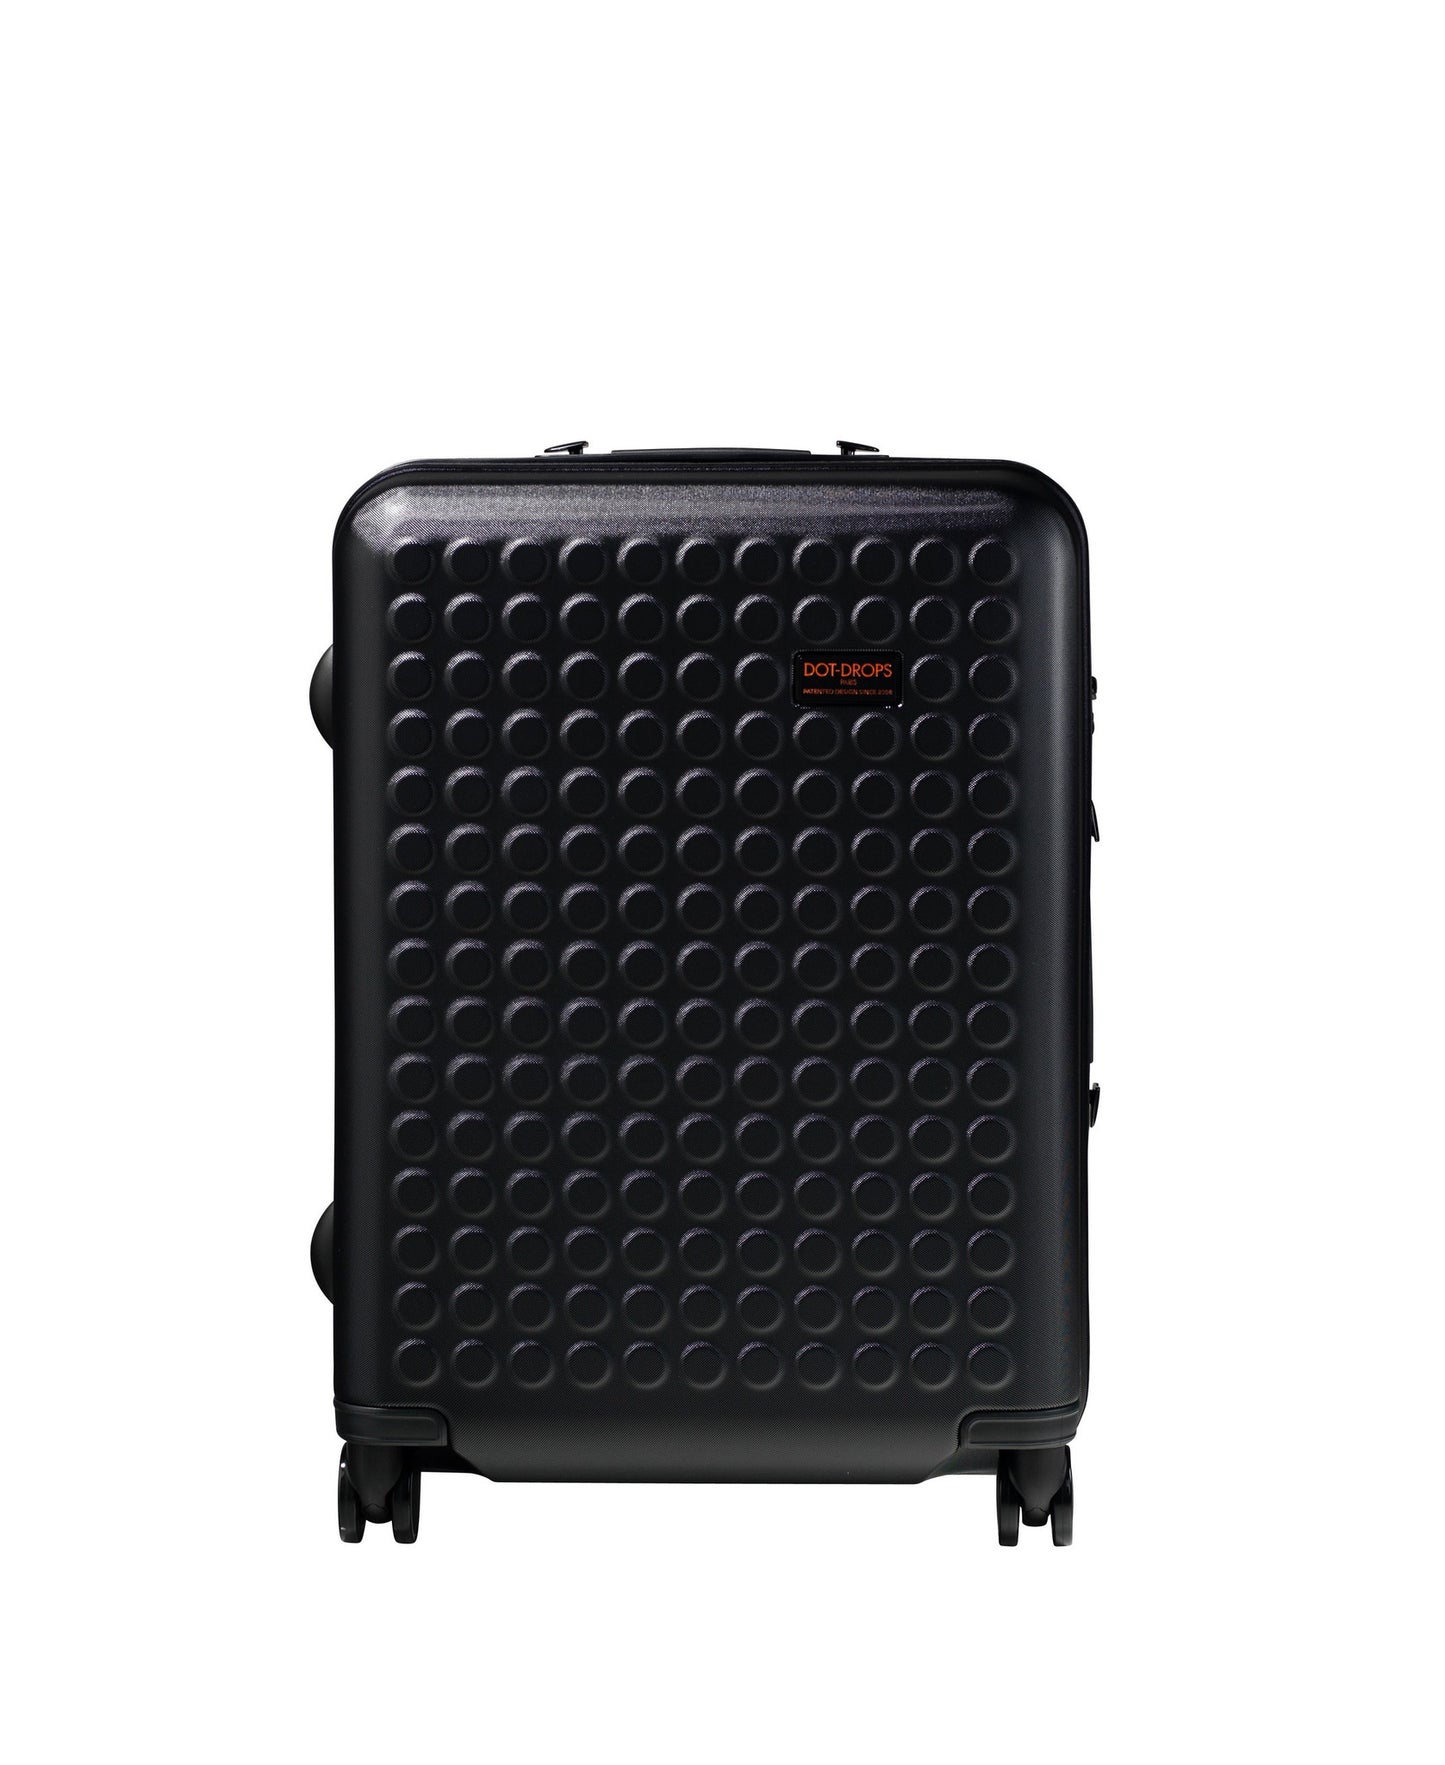 Hardside 4-wheels suitcase Black (24") 22145PC